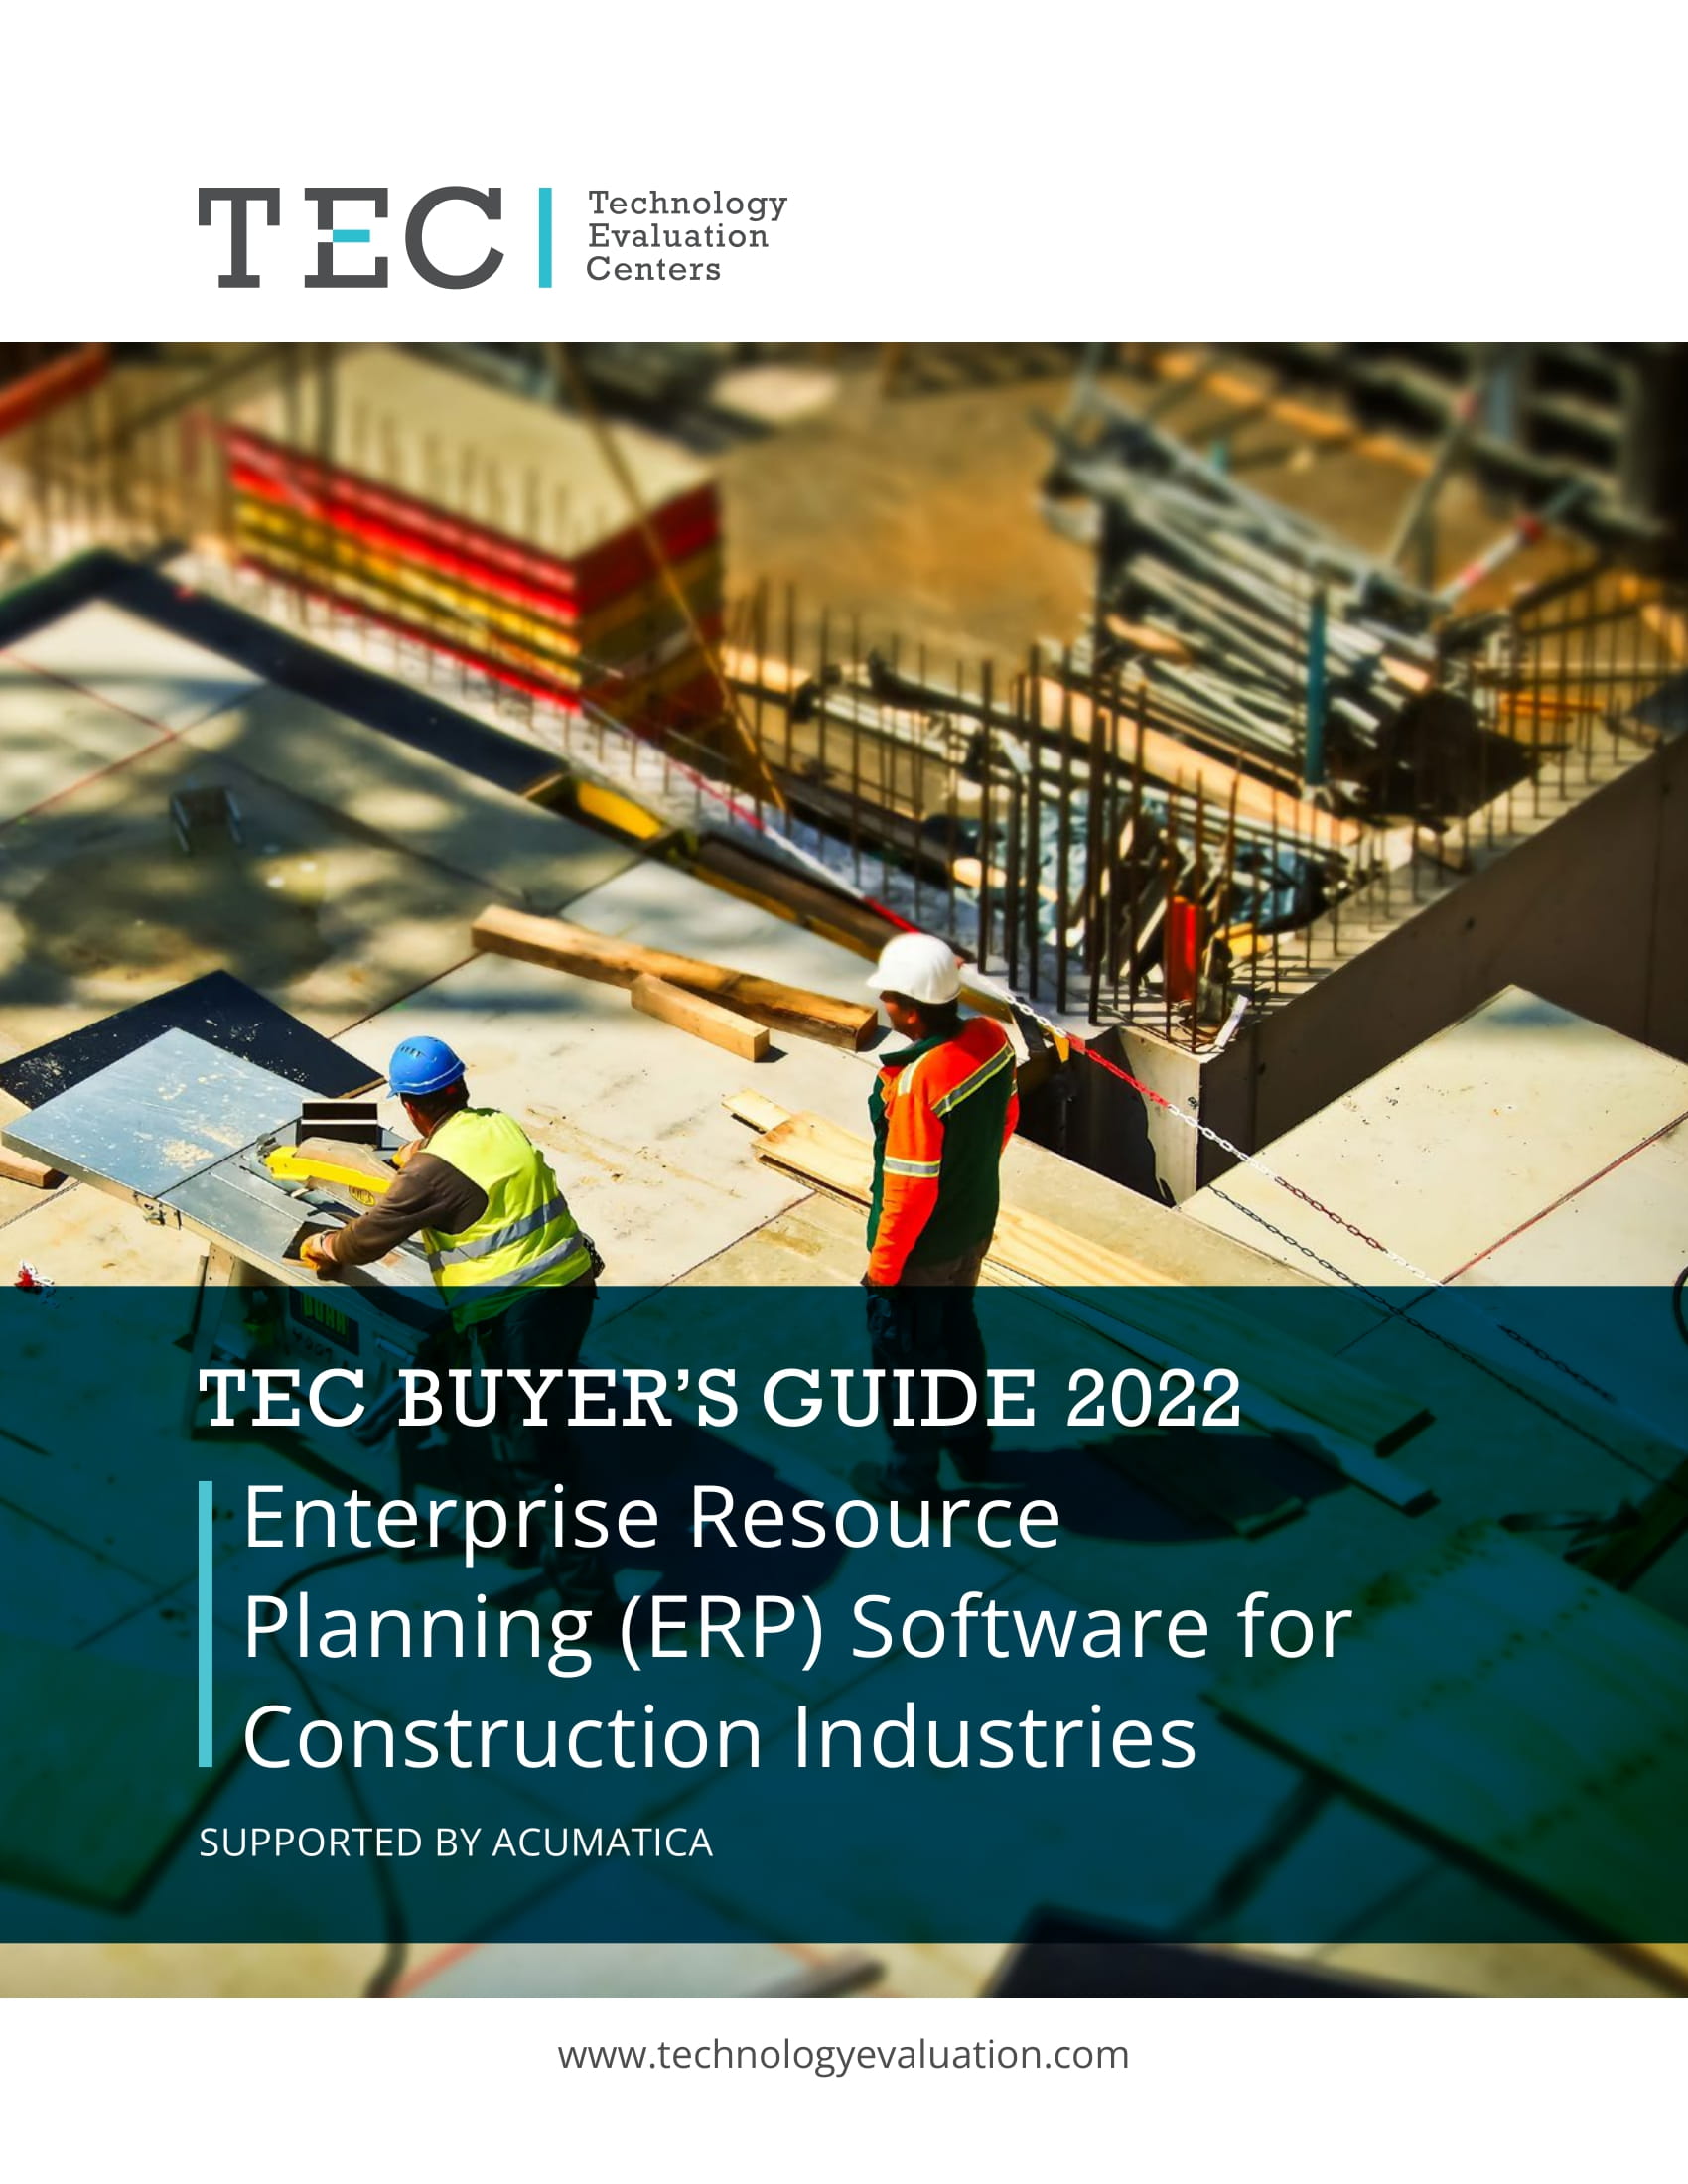 Le guide de l’acheteur du logiciel ERP pour les industries de la construction par technology evaluation centers (TEC) présente Acumatica.